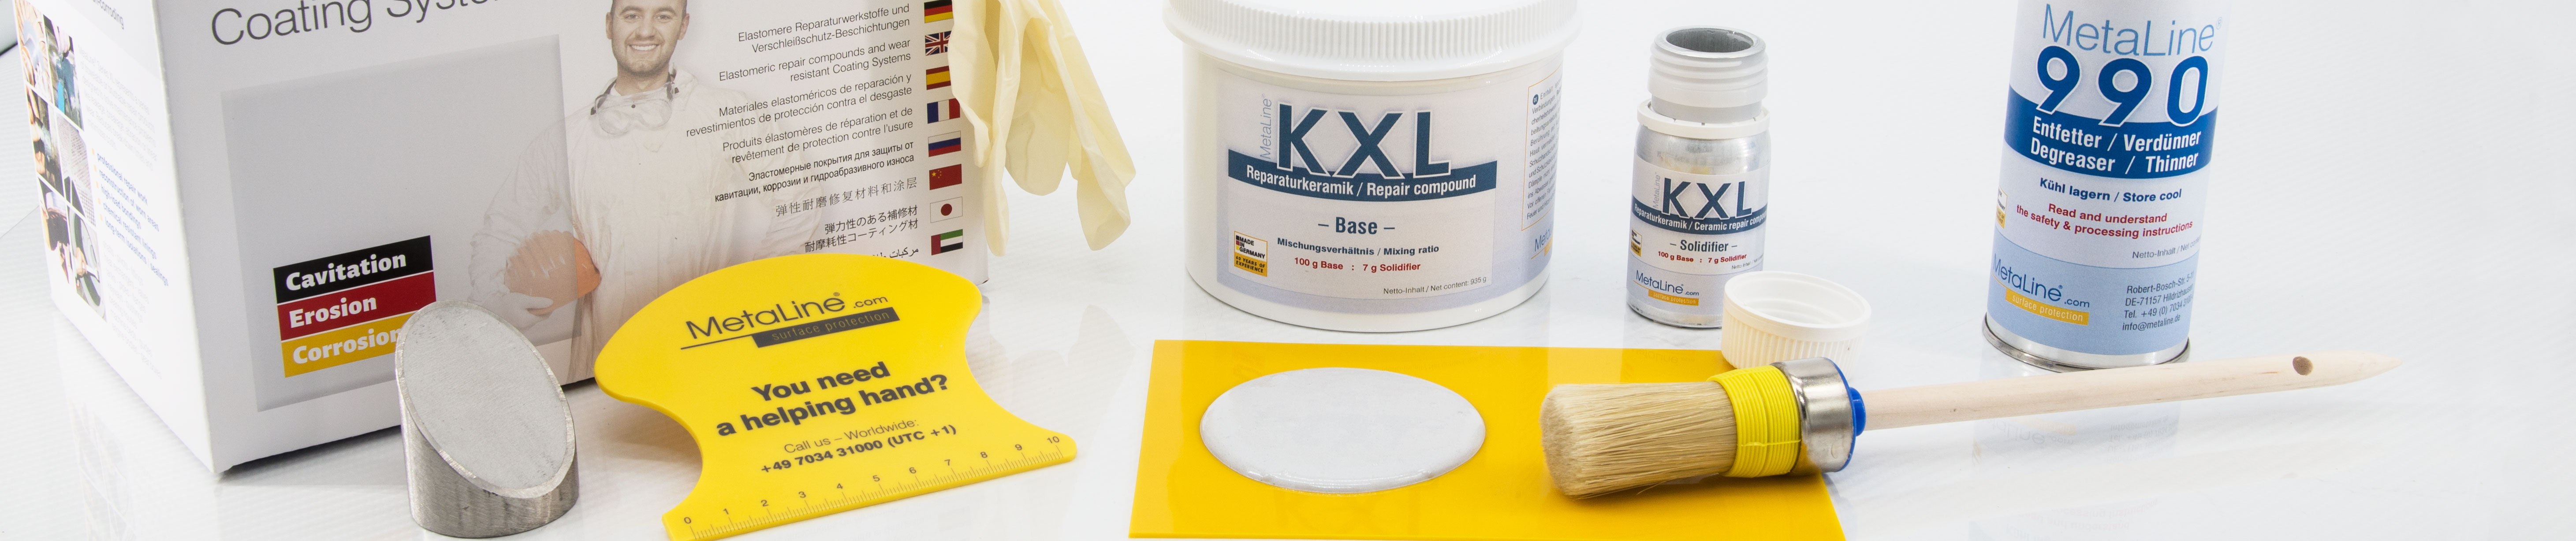 MetaLine KXL ceramic repair system